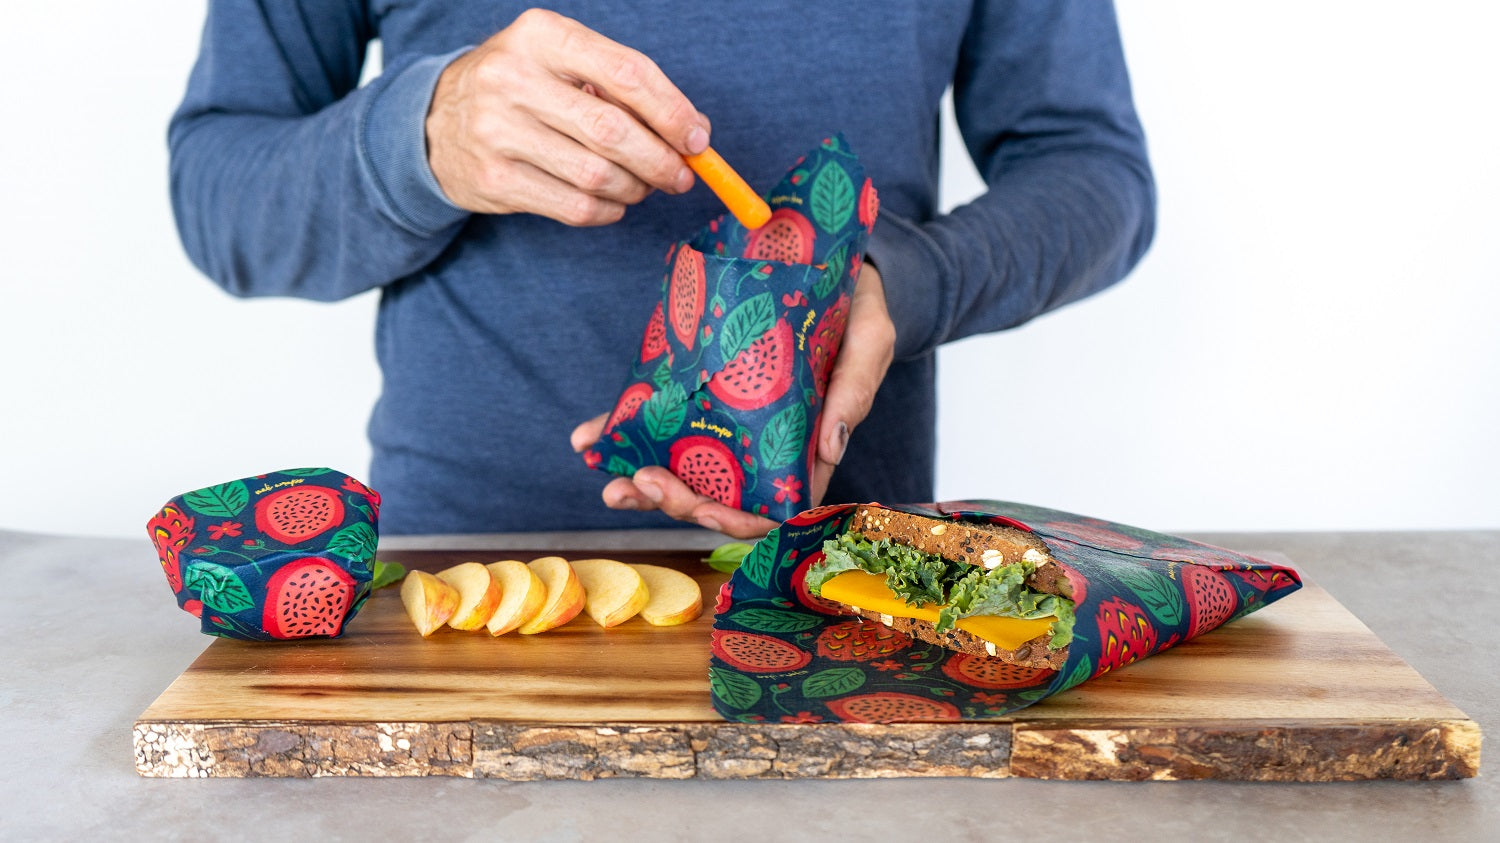 Reusable Beeswax Food Wrap - Dragonfruit Print - Meli Wraps Small + Medium + Large - 3-Pack